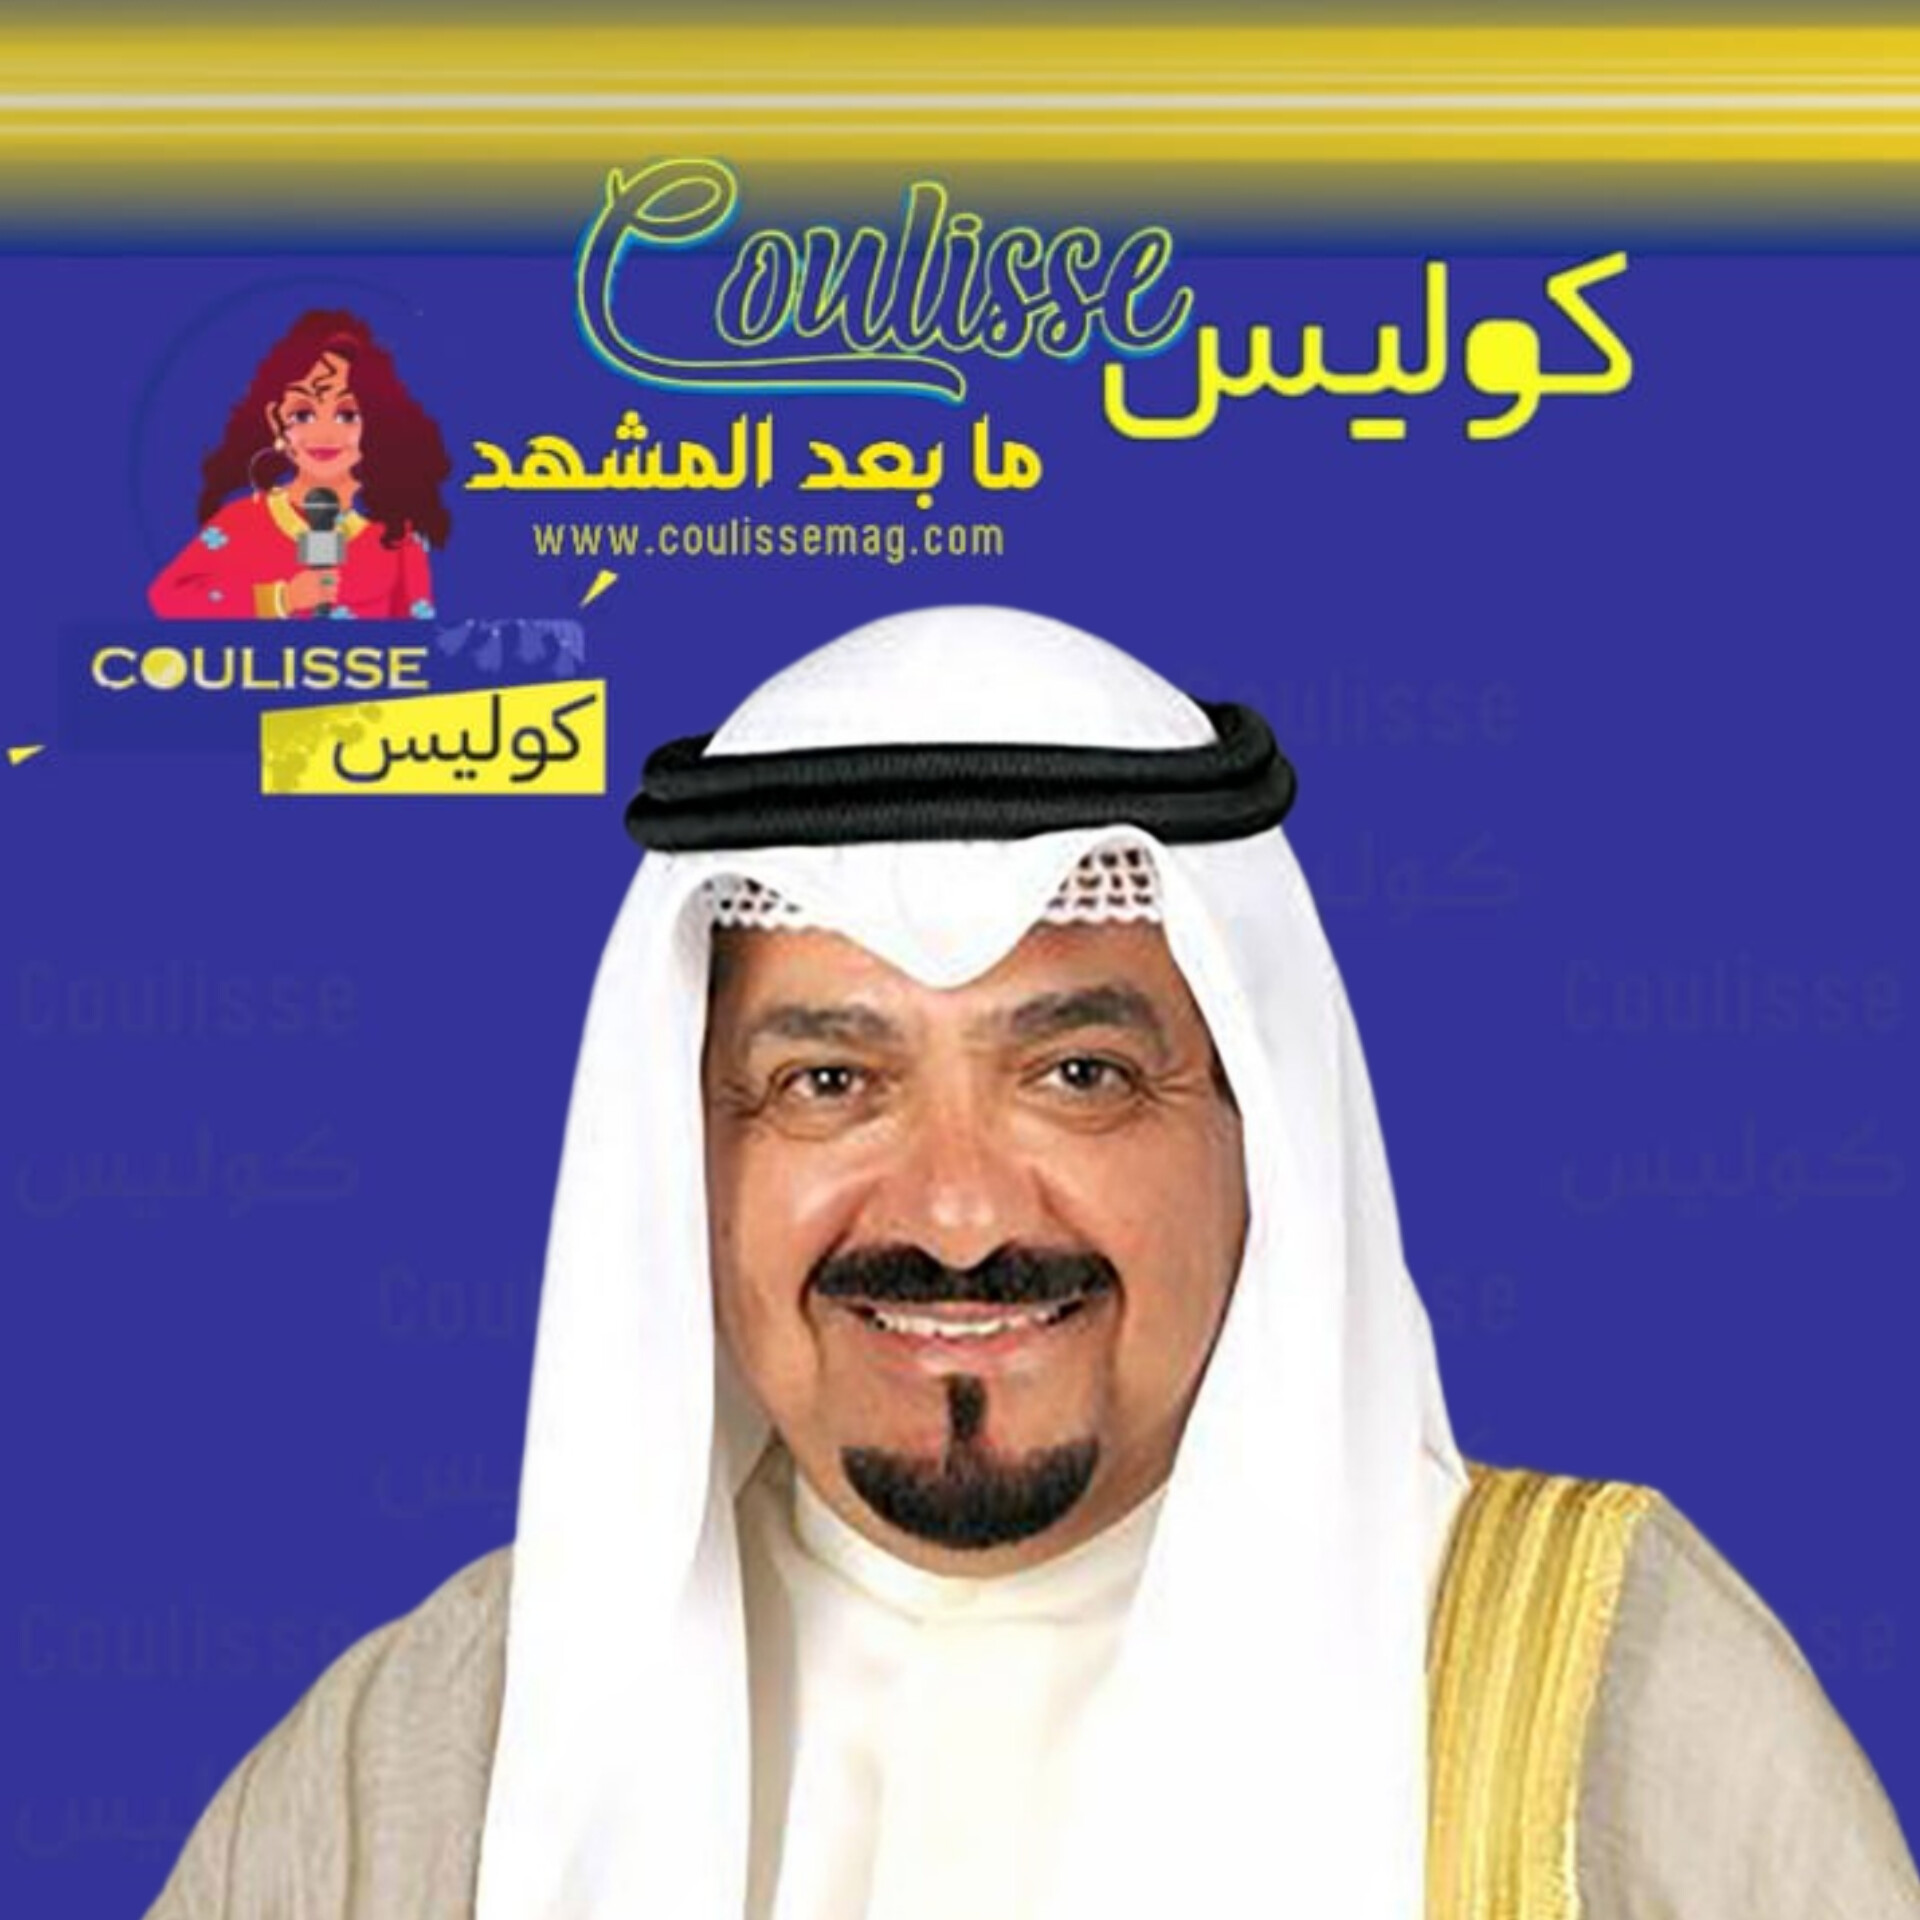 أمير الكويت يعين الشيخ أحمد عبد الله الأحمد الصباح رئيسا لمجلس الوزراء! – وثيقة